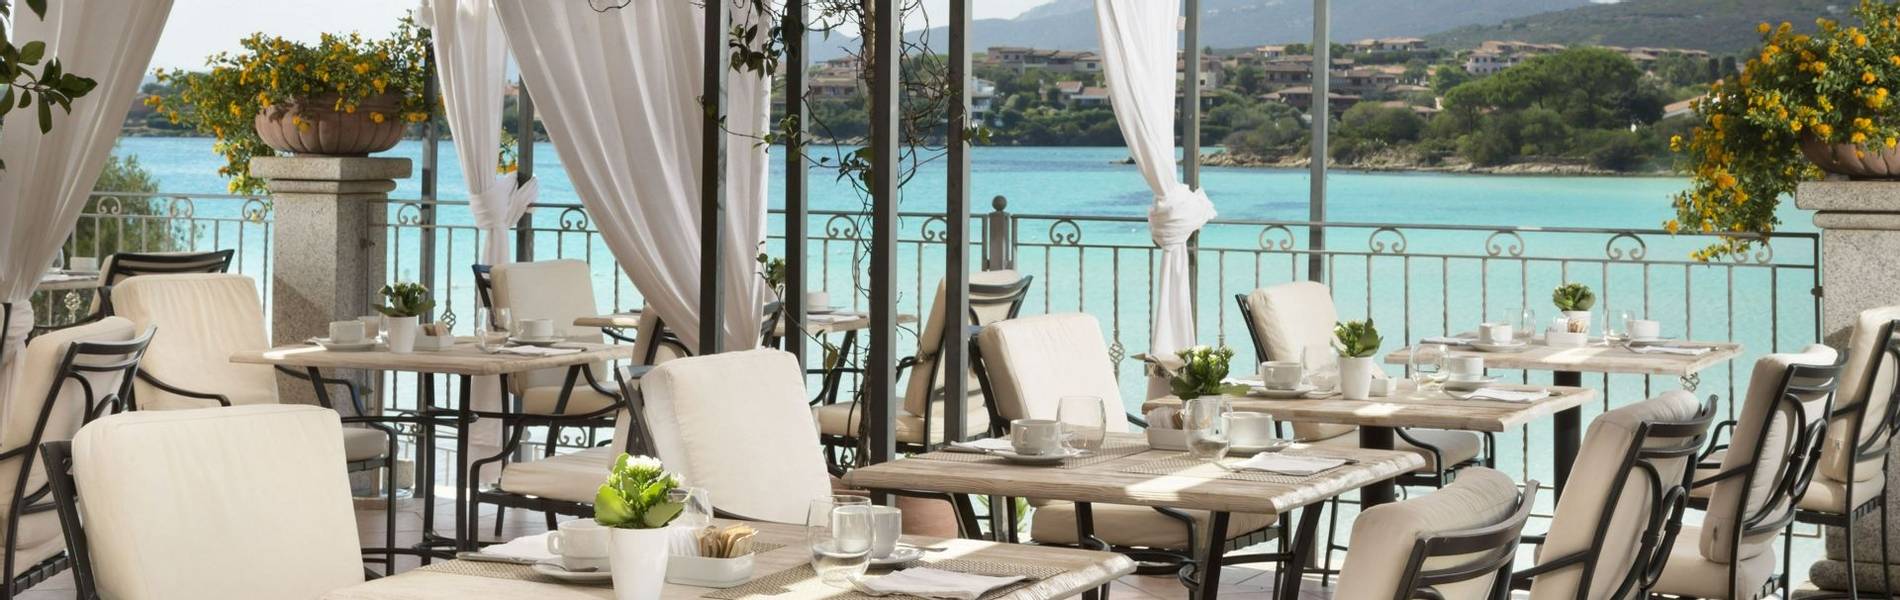 Copia di Breakfast on the terrace - Gabbiano azzurro Hotel _ Suites - stampa3.jpg